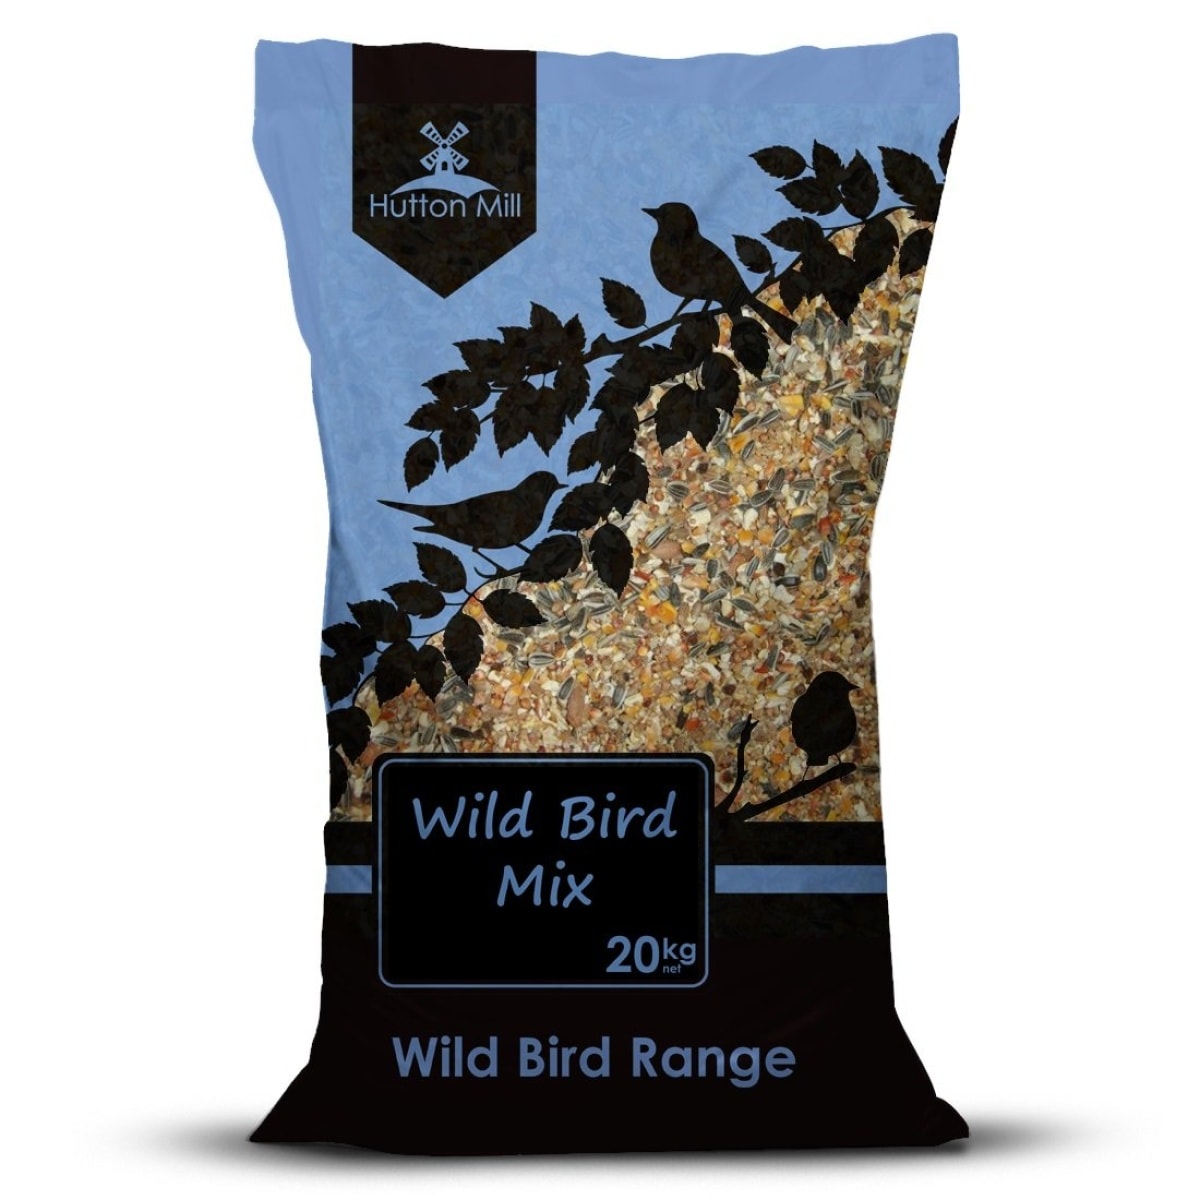 Hutton Mill Wild Bird Mix 20kg Main Image